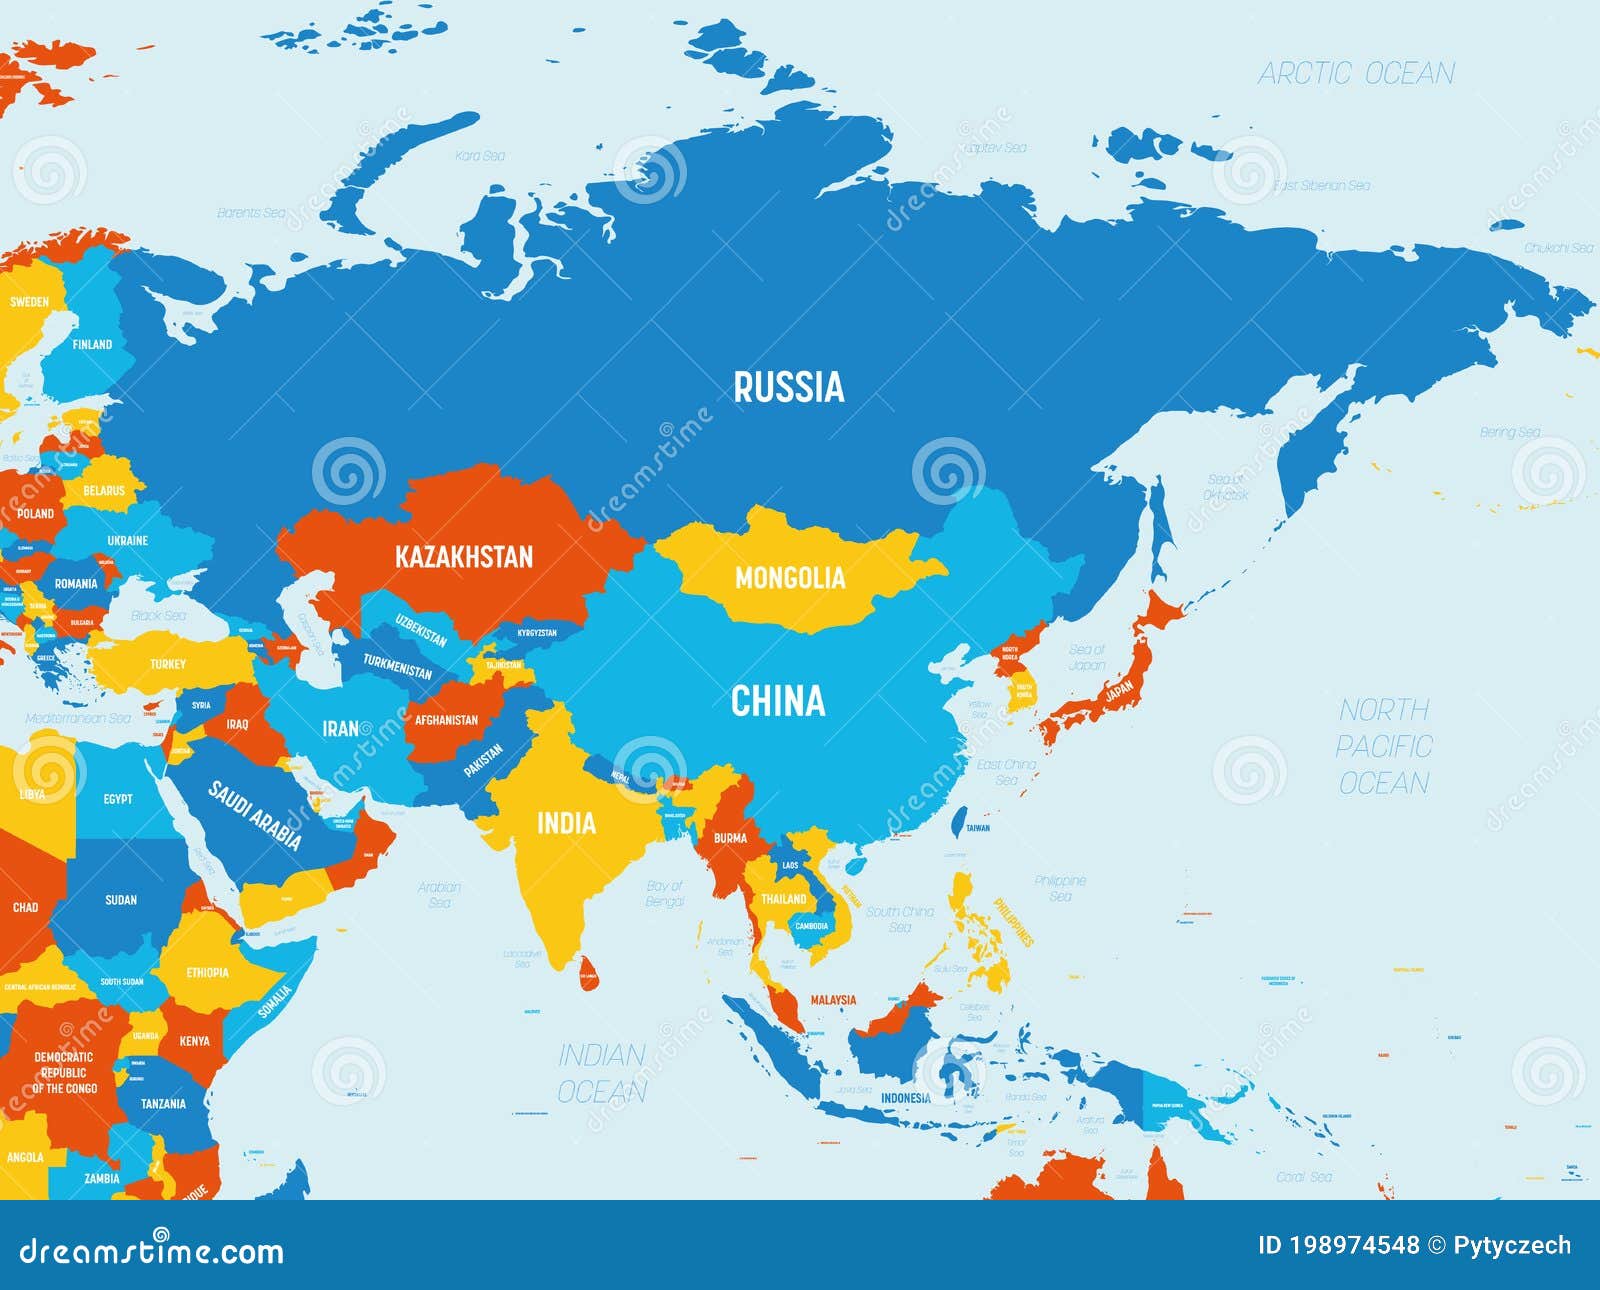 Asia 4 Colores Brillantes Mapa Politico Detallado Del Continente Asiatico Con Etiquetas De Nombres De Paises Oceanos Y Mares Ilustracion Del Vector Ilustracion De Mapa Paises